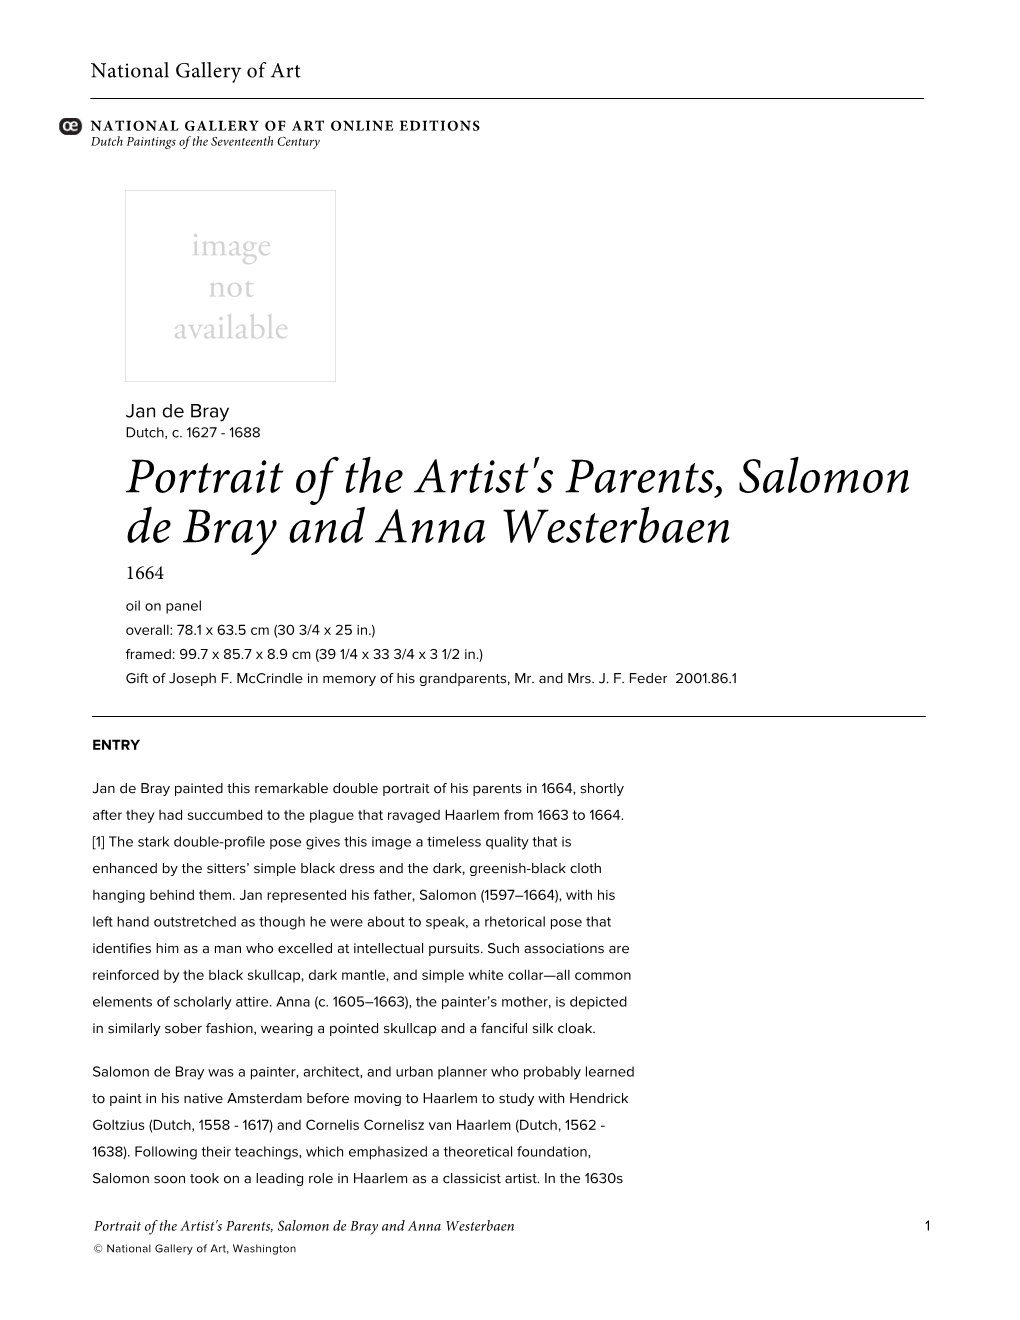 Portrait of the Artist's Parents, Salomon De Bray and Anna Westerbaen